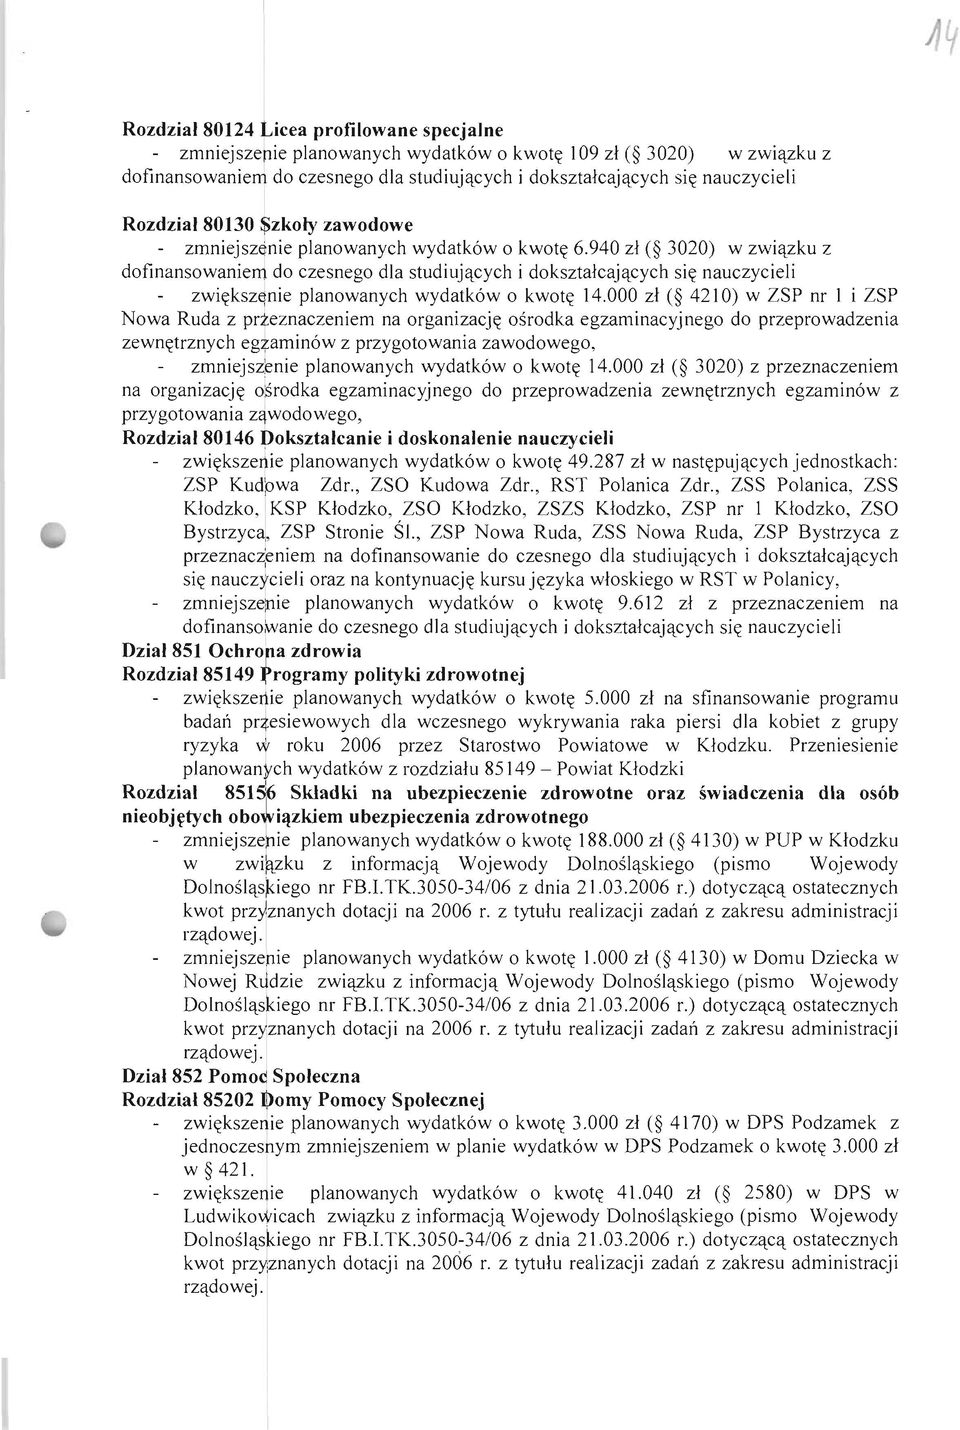 940 zł ( 3020) w związku z dofinansowaniem do czesnego dla studiujących i dokształcających się nauczycieli zwiększ~nie planowanych wydatków o kwotę 14.